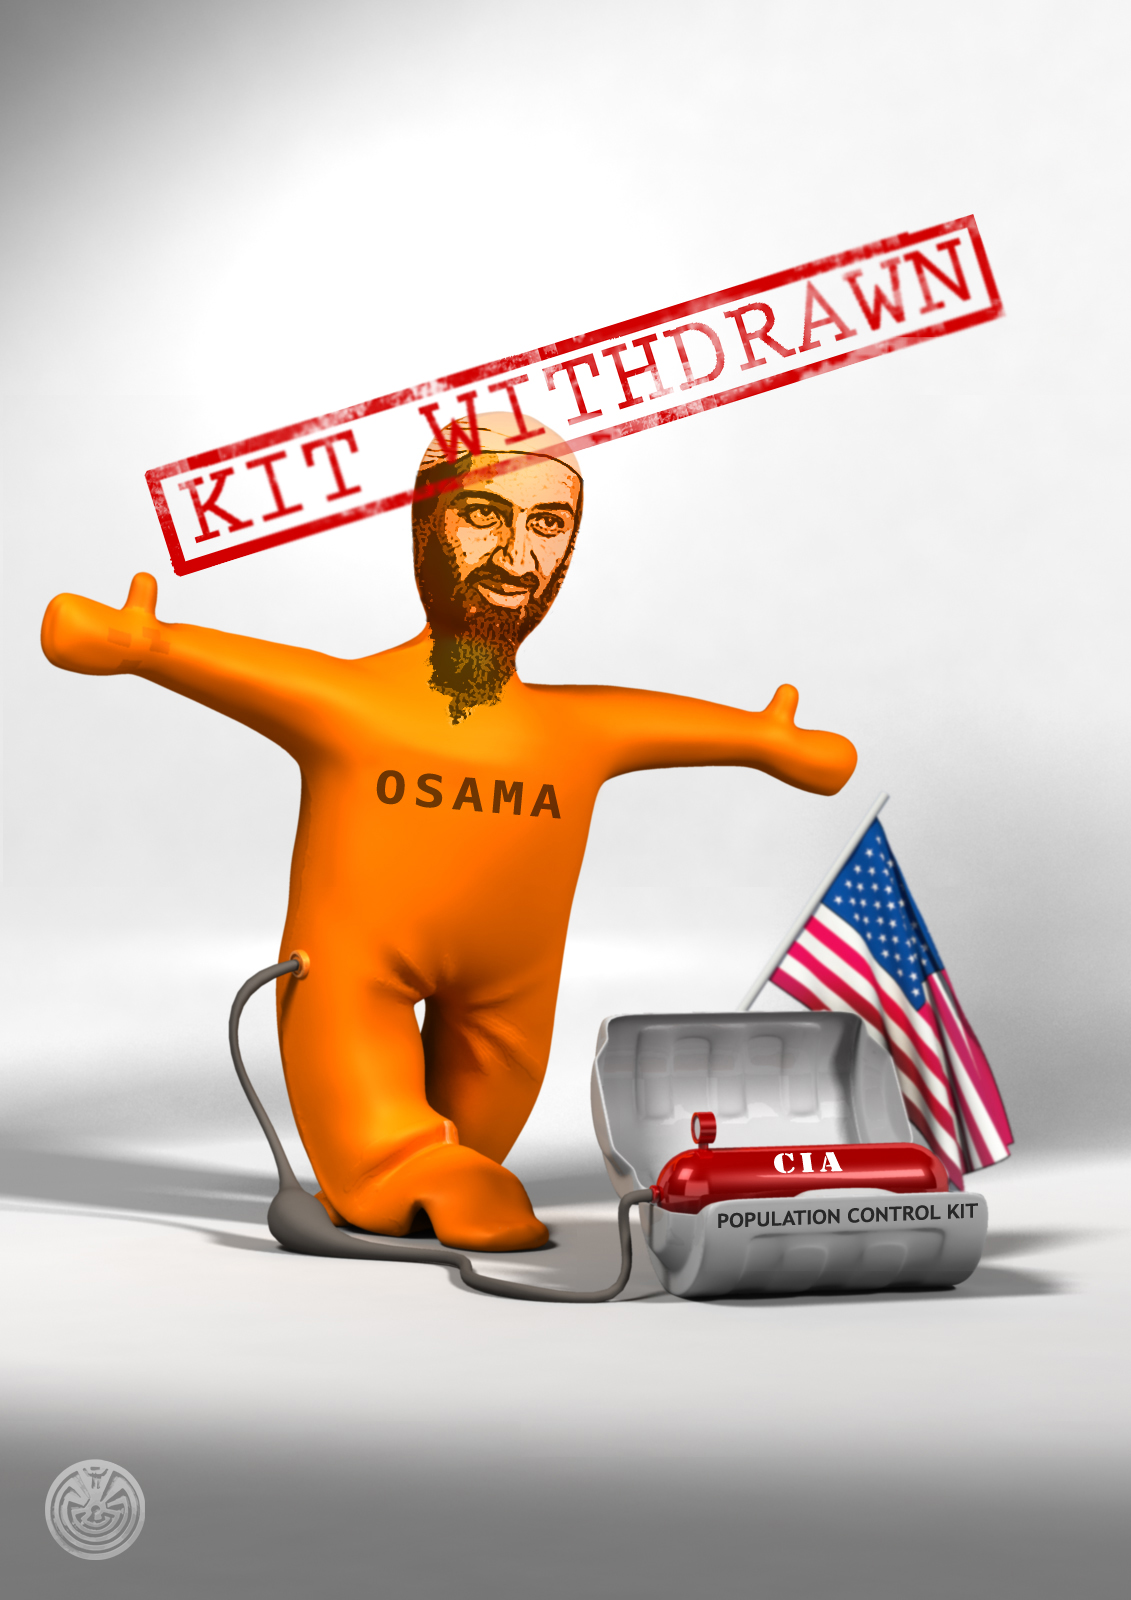 Obama_Kit_Withdrawn.jpg